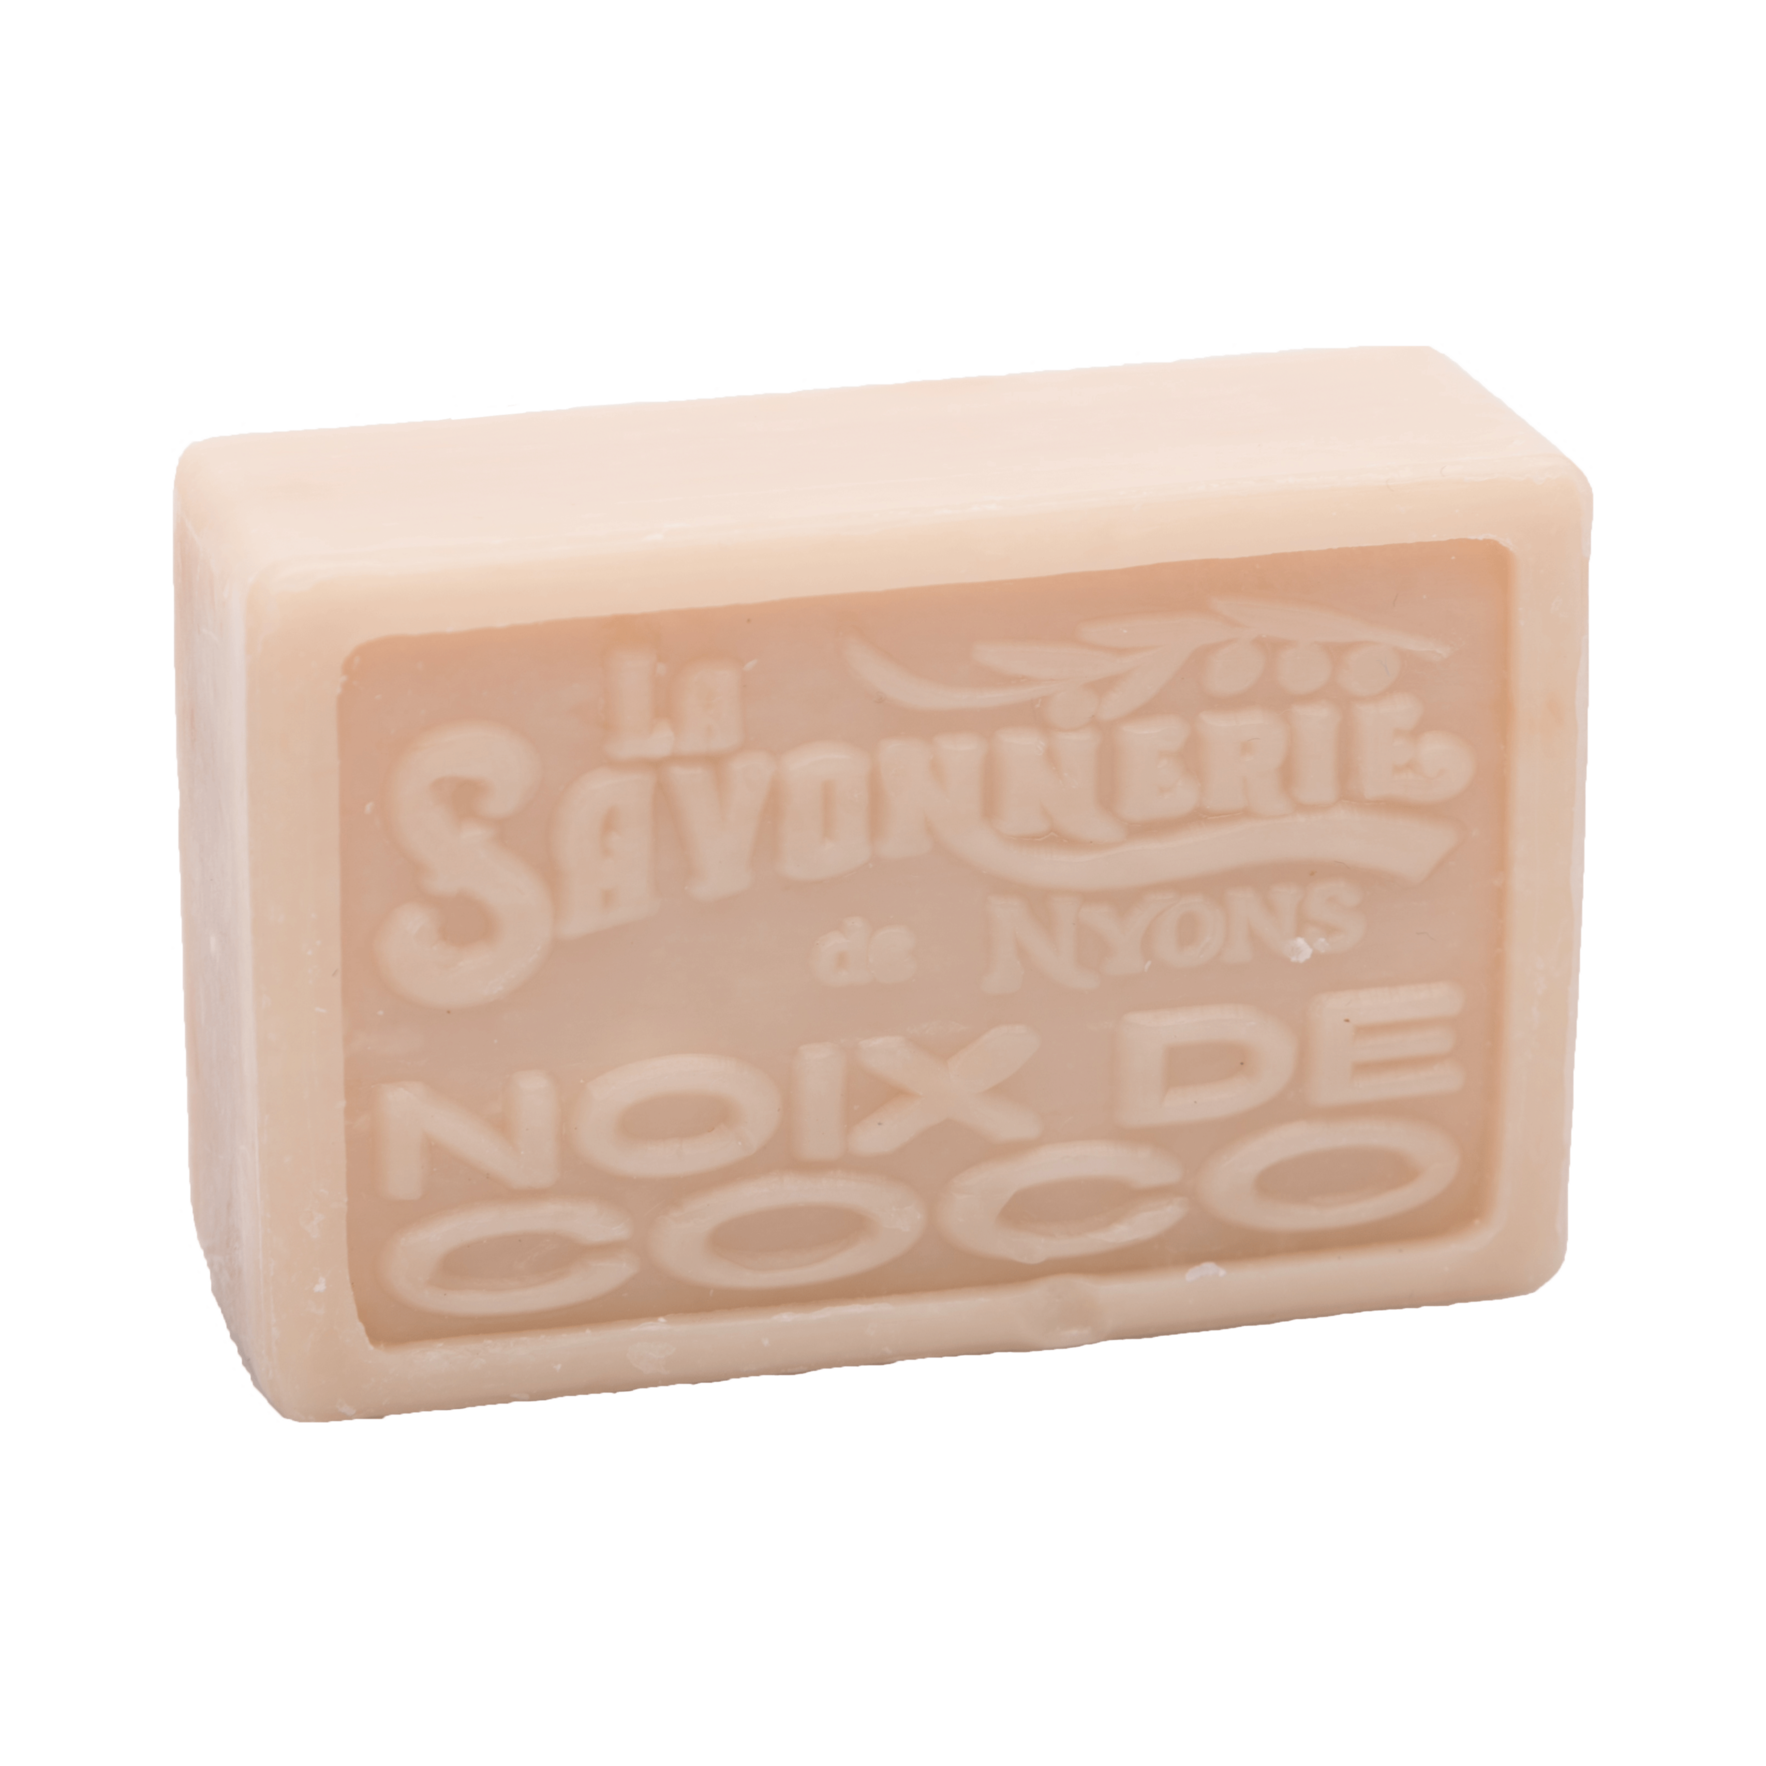 La Savonnerie de Nyons 100g Soap Bar (Set of 2)